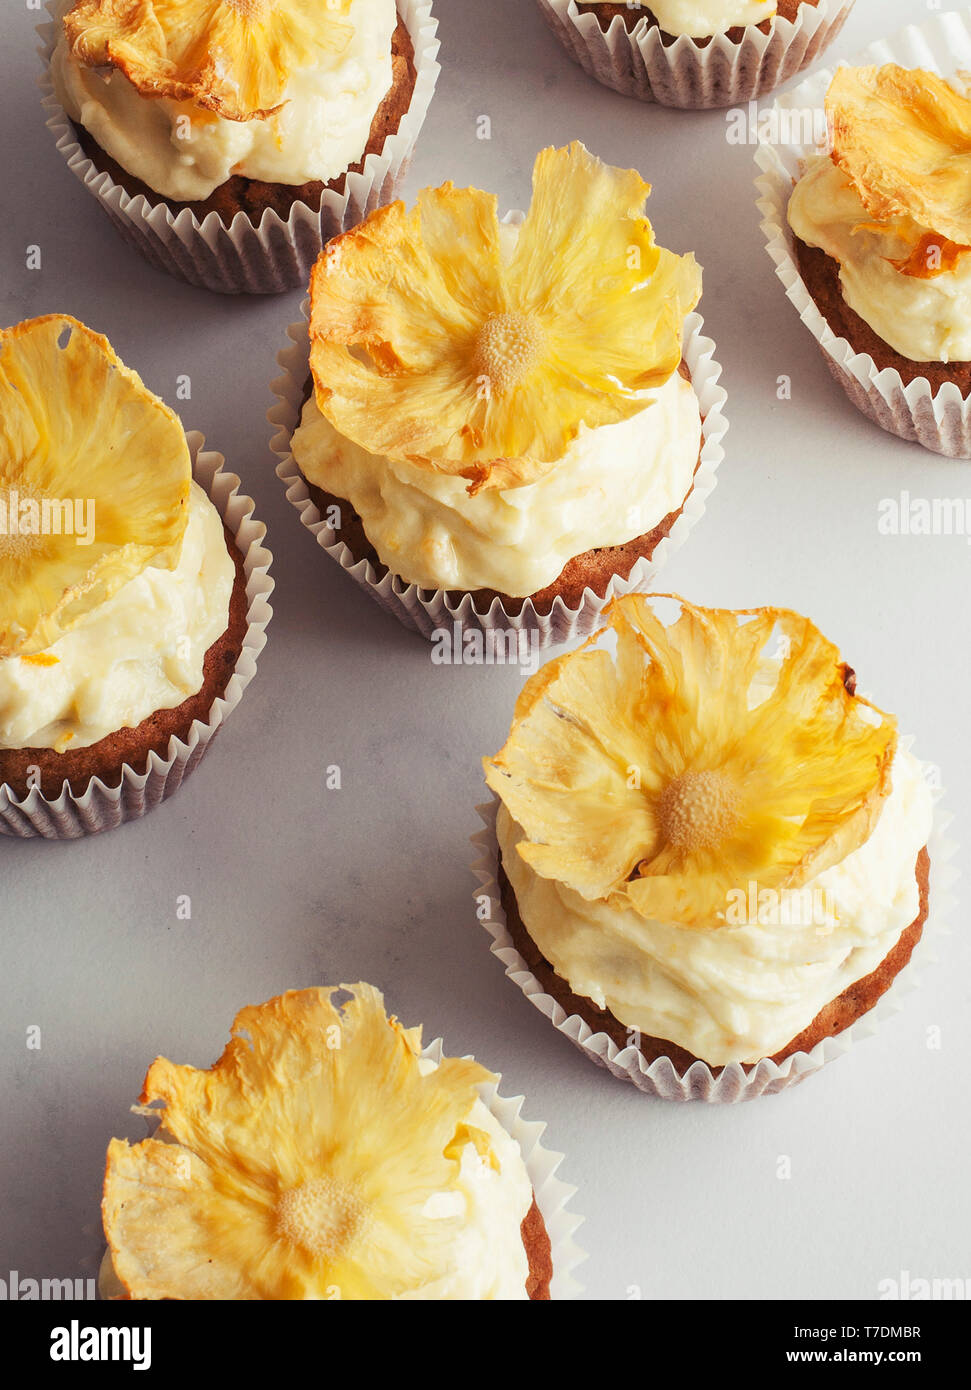 Gâteau aux carottes muffins aux ananas décoration florale Banque D'Images